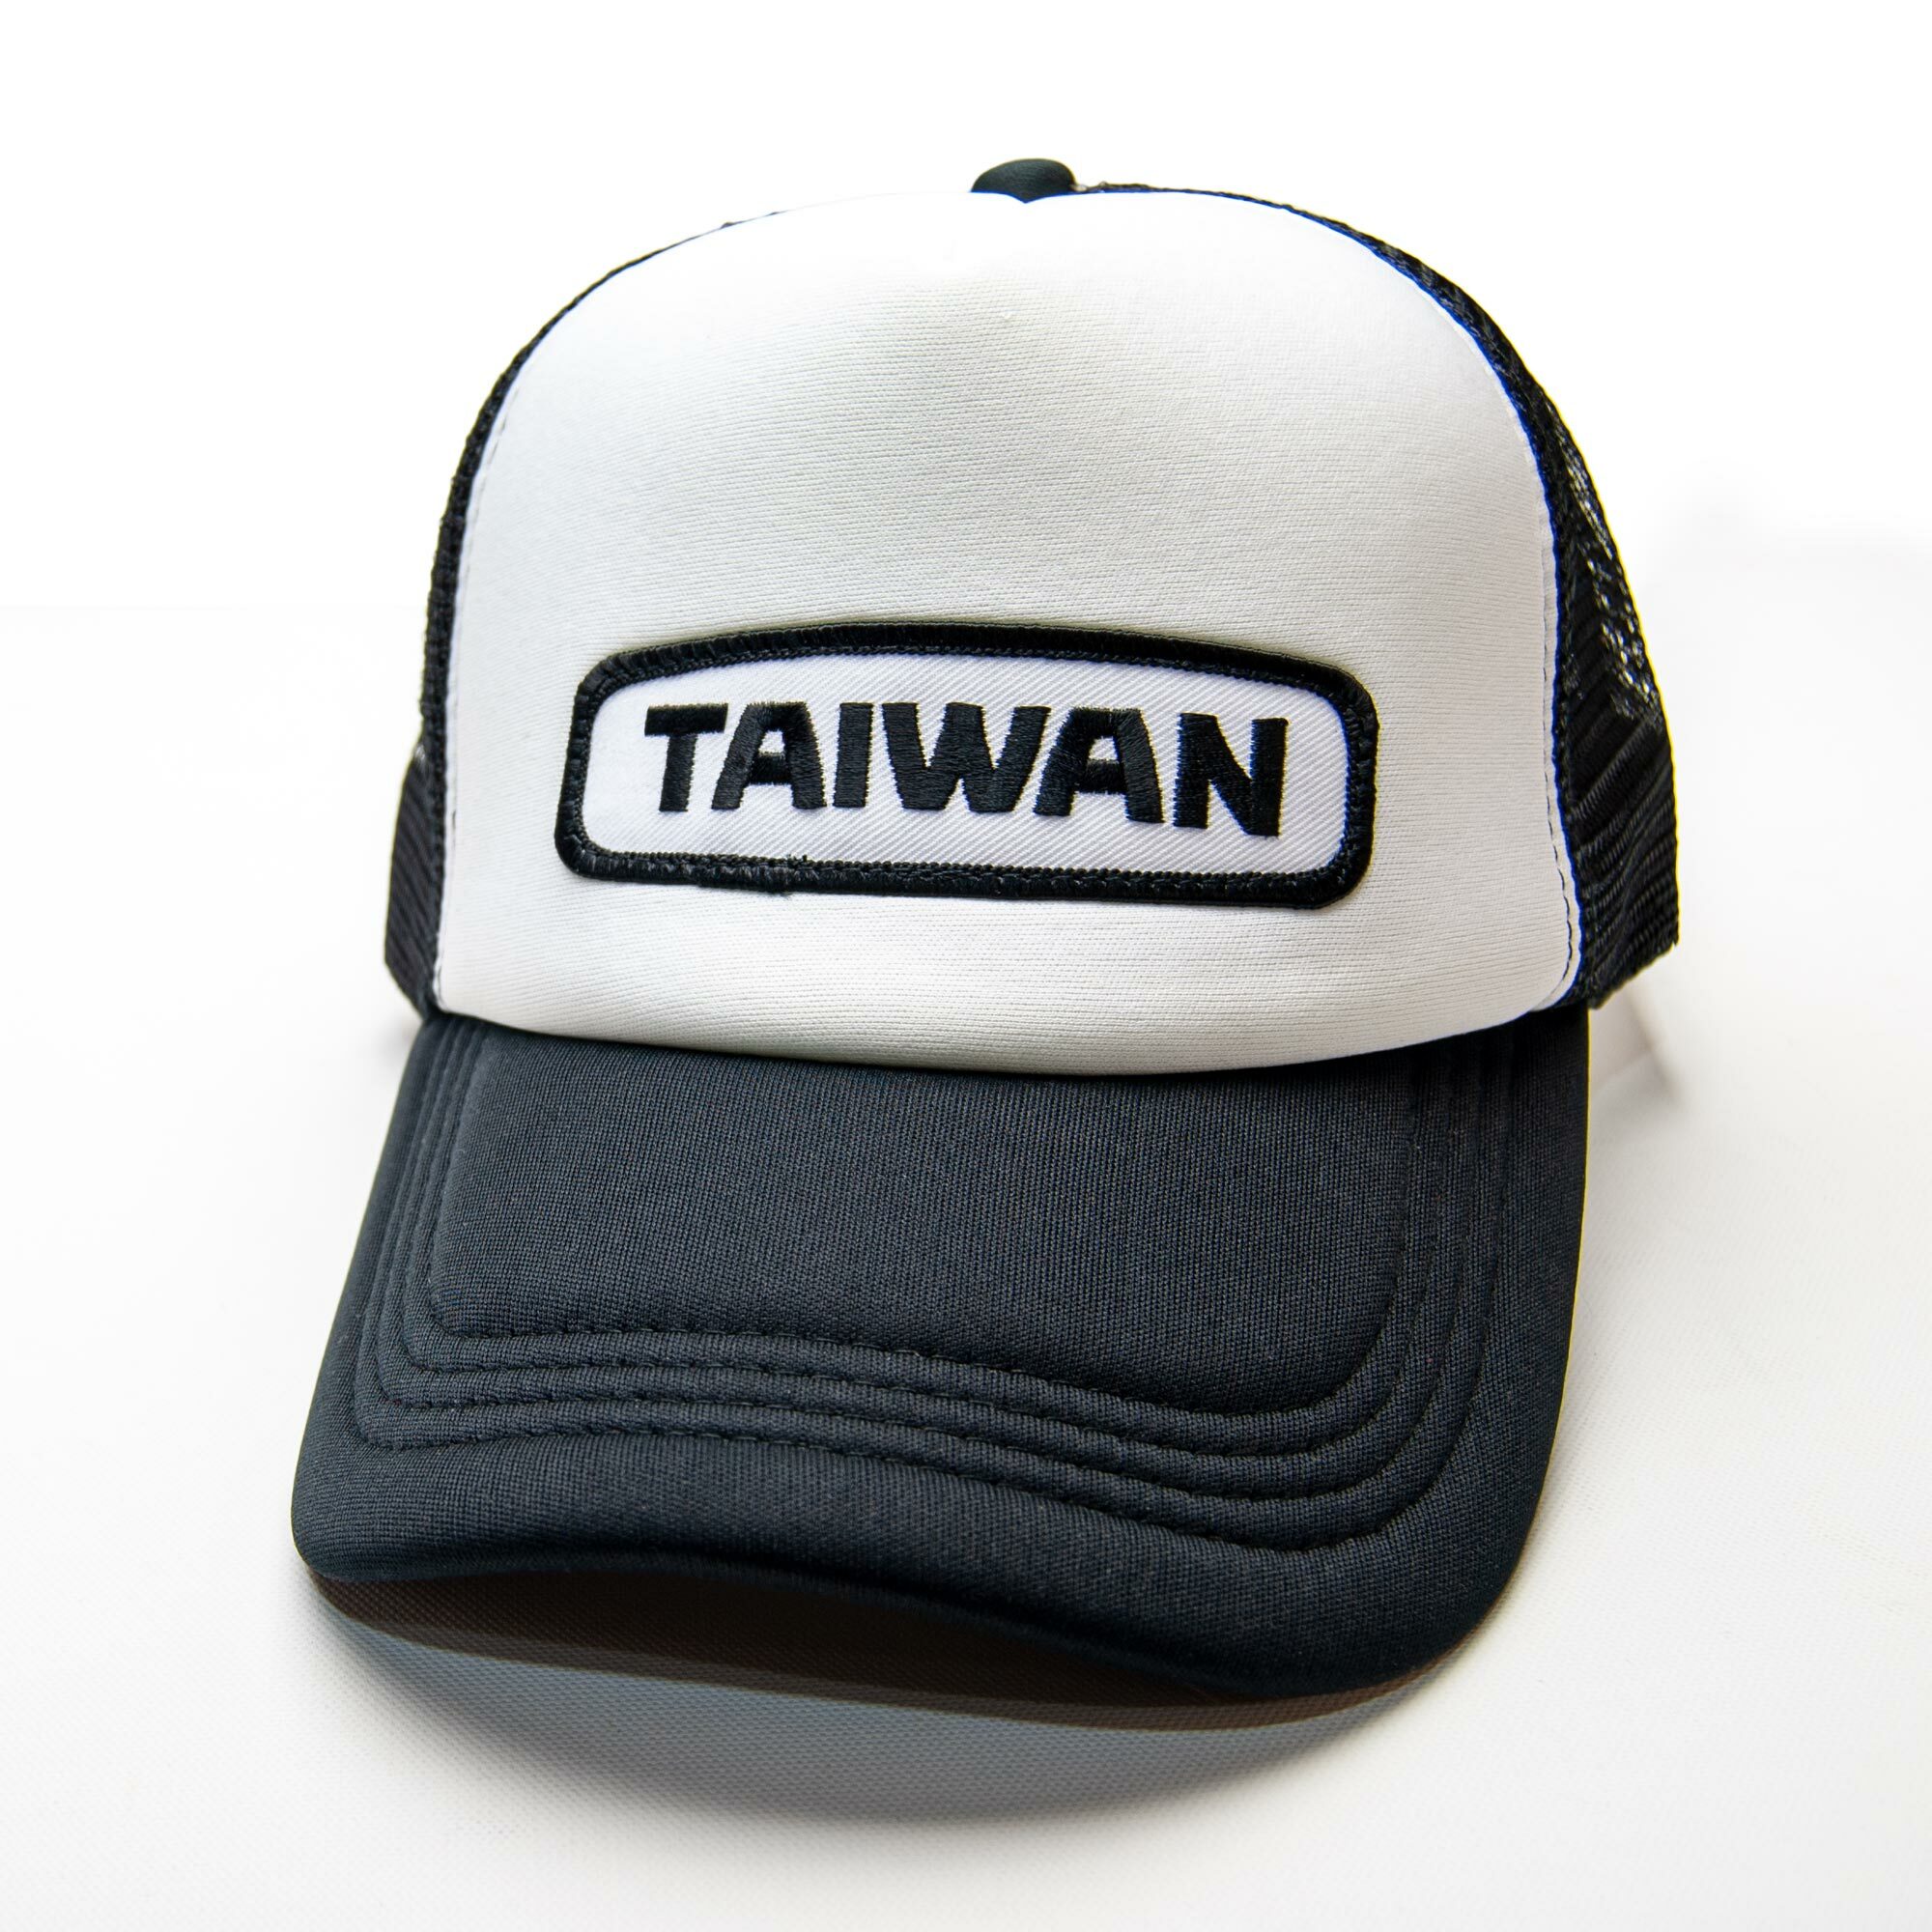 BURA_Taiwan_Patch_Sponge_Trucker_01